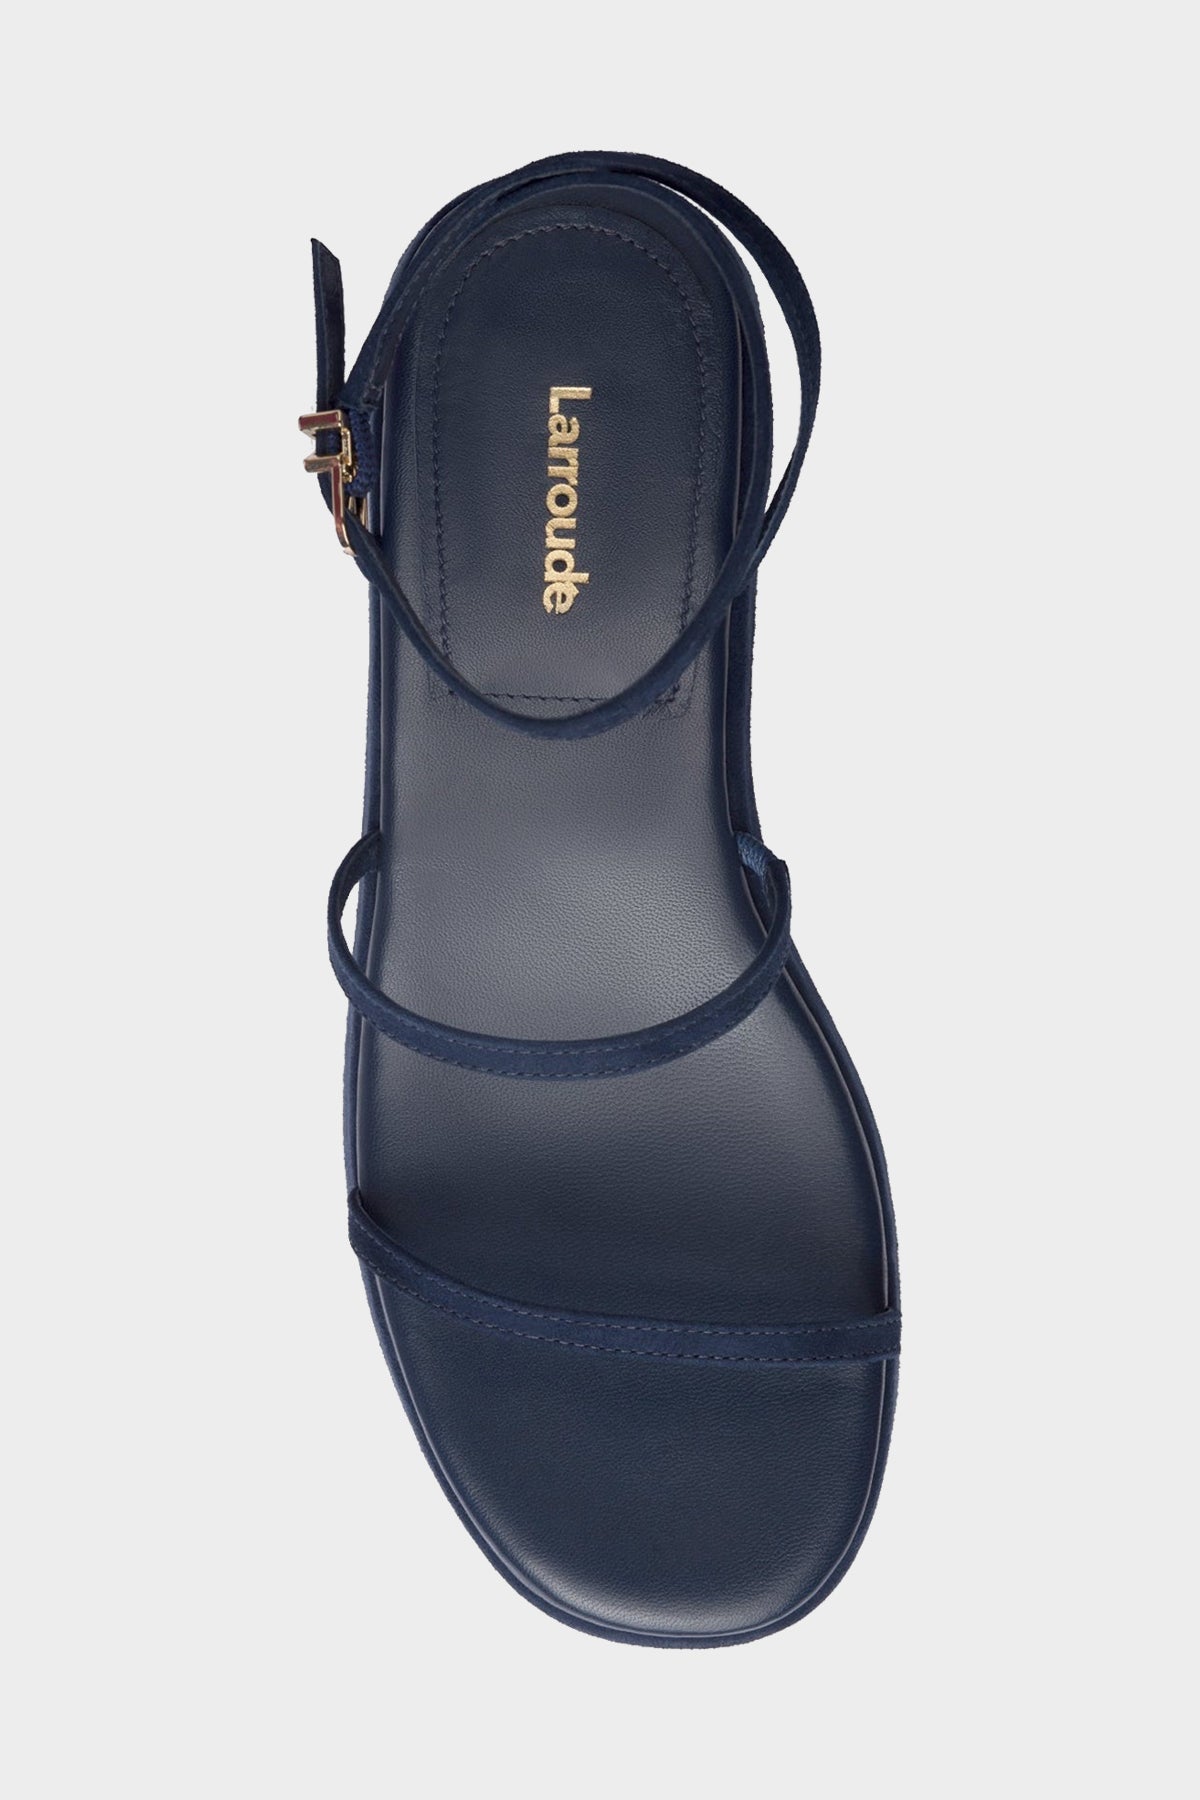 Gio Flatform Sandal in Navy Suede - shop-olivia.com